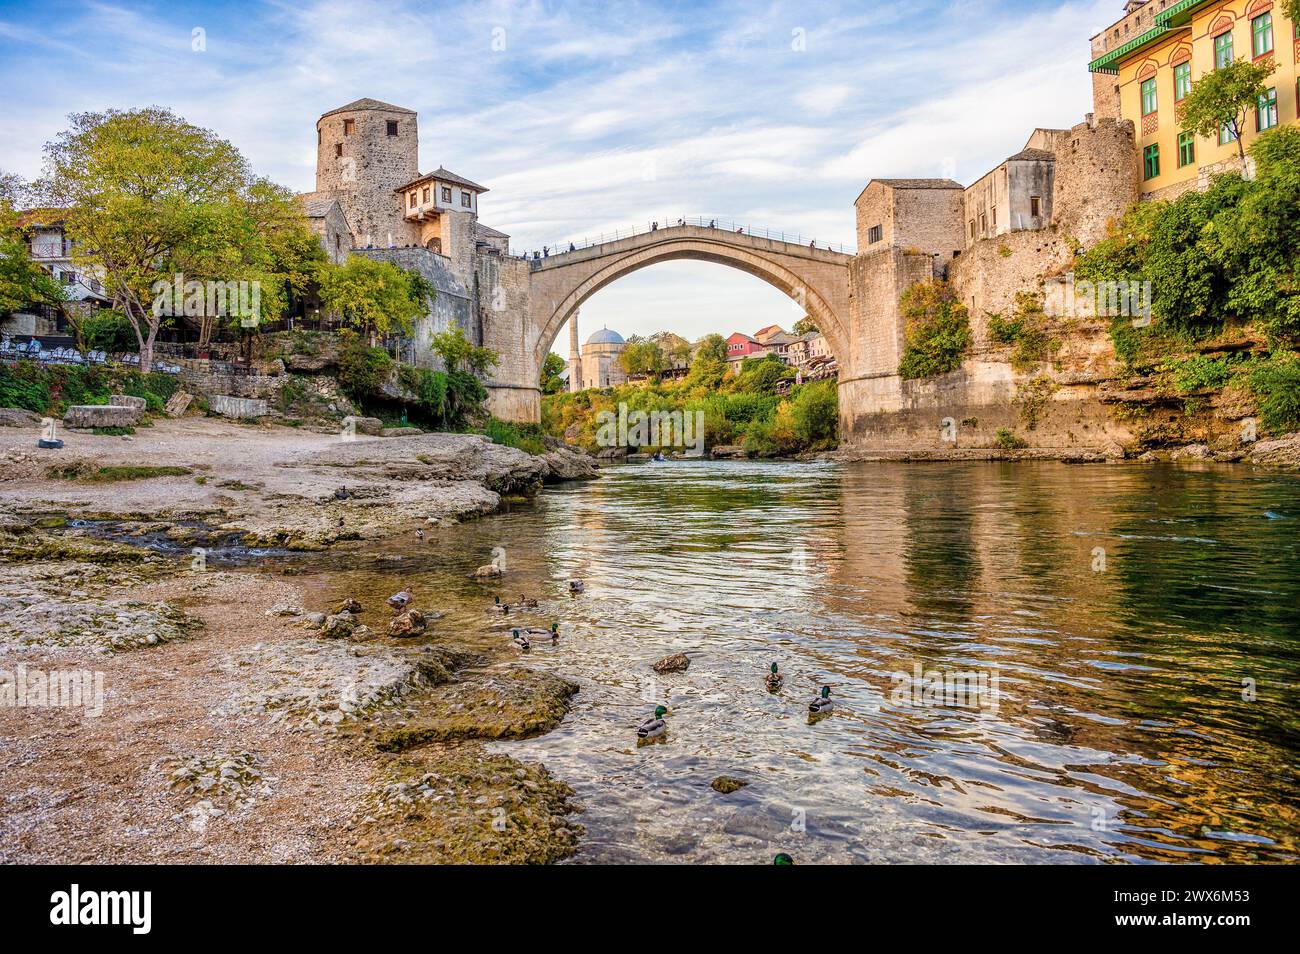 Pont historique de Mostar connu aussi sous le nom de Stari Most ou Vieux Pont à Mostar, Bosnie-Herzégovine. Horizon des maisons et minarets de Mostar, au soleil Banque D'Images